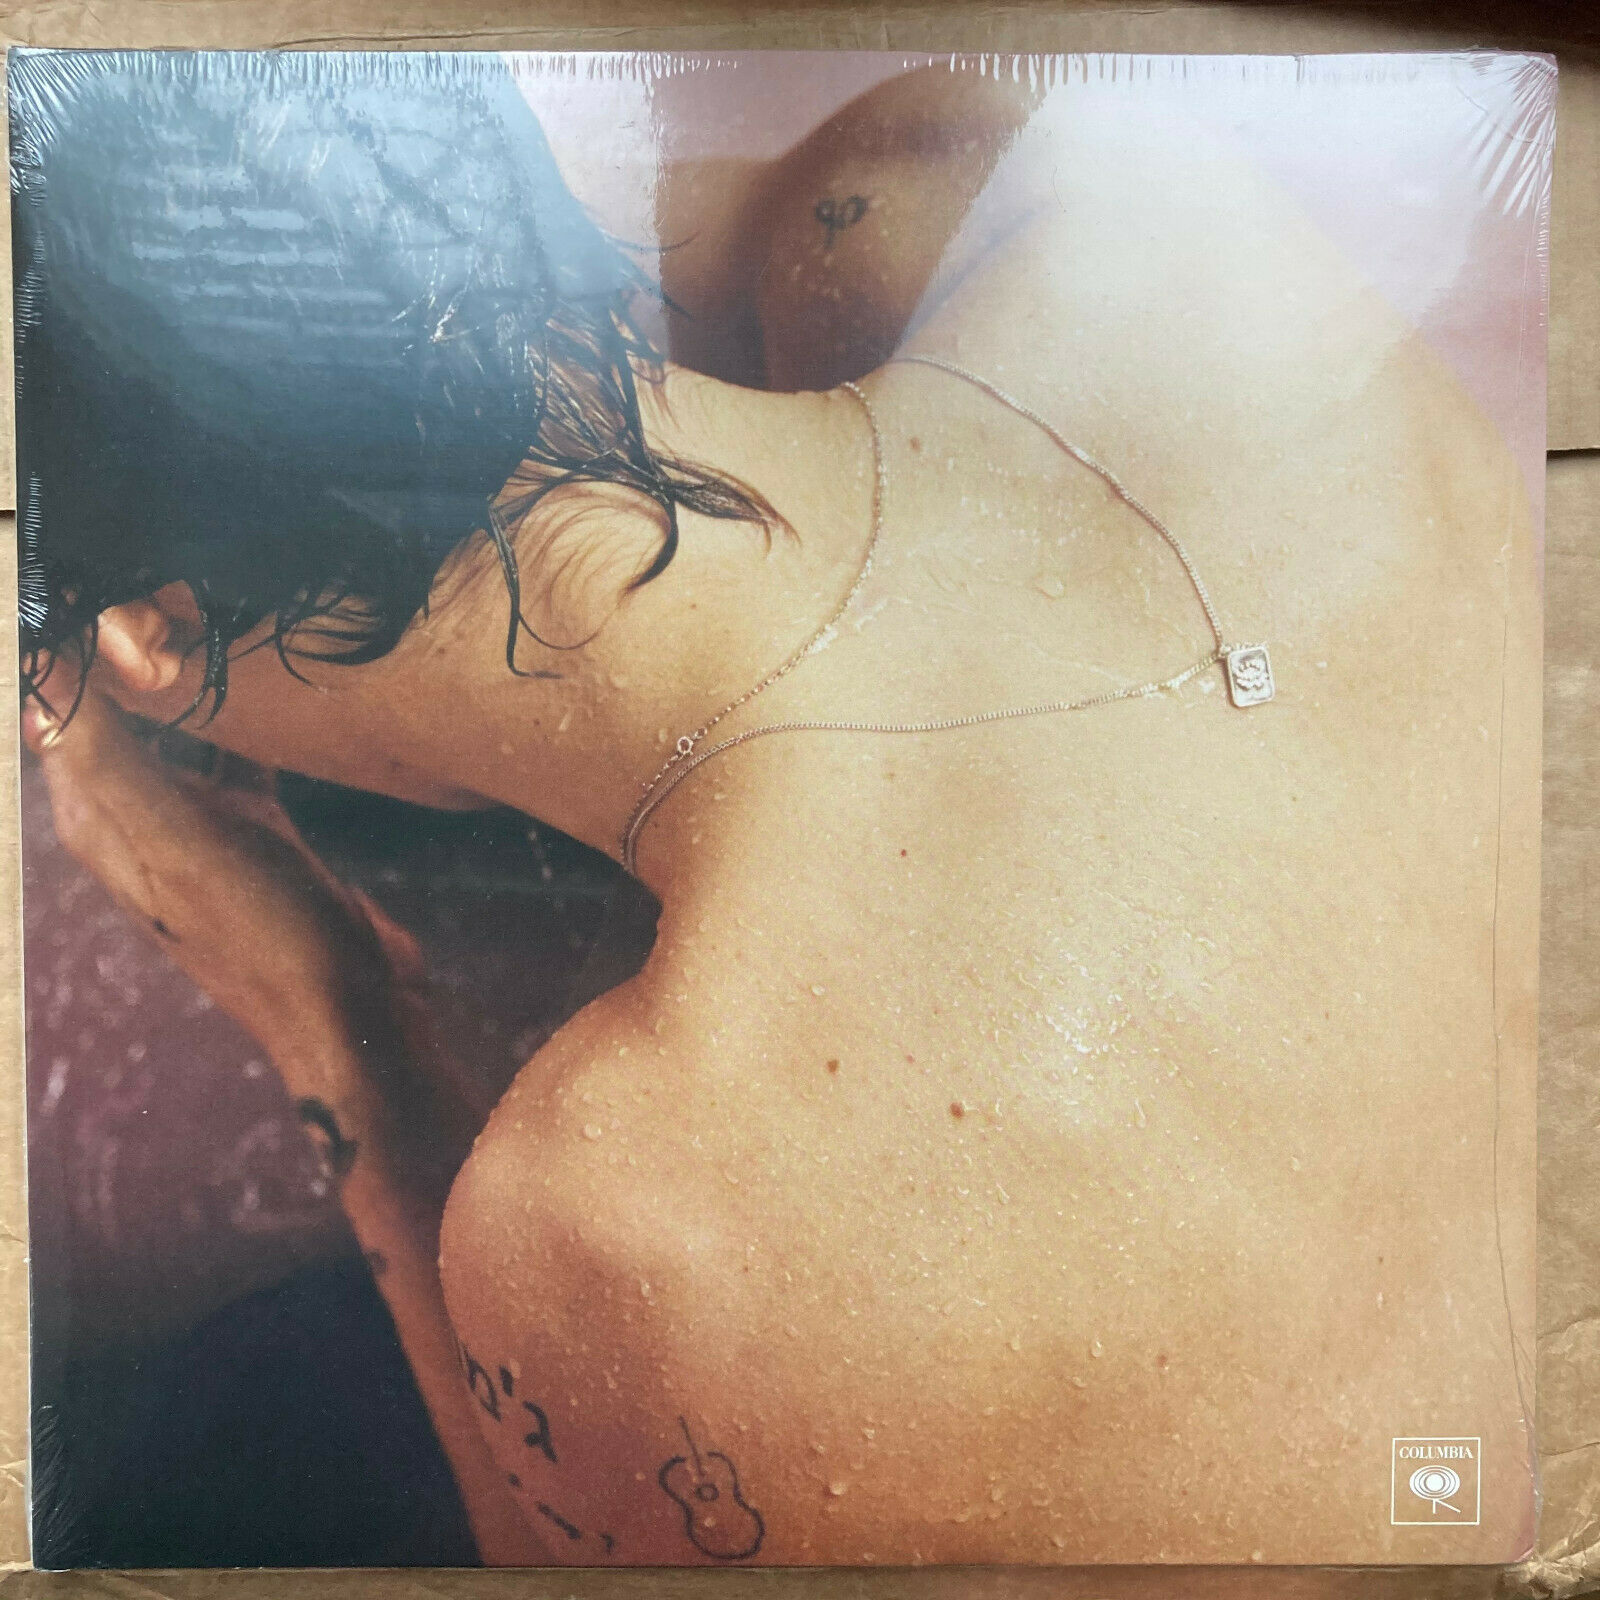  Harry Styles - Limited Edition 2 Year Anniversary Vinyl  (Pink) LP - Neu und OVP - auction details